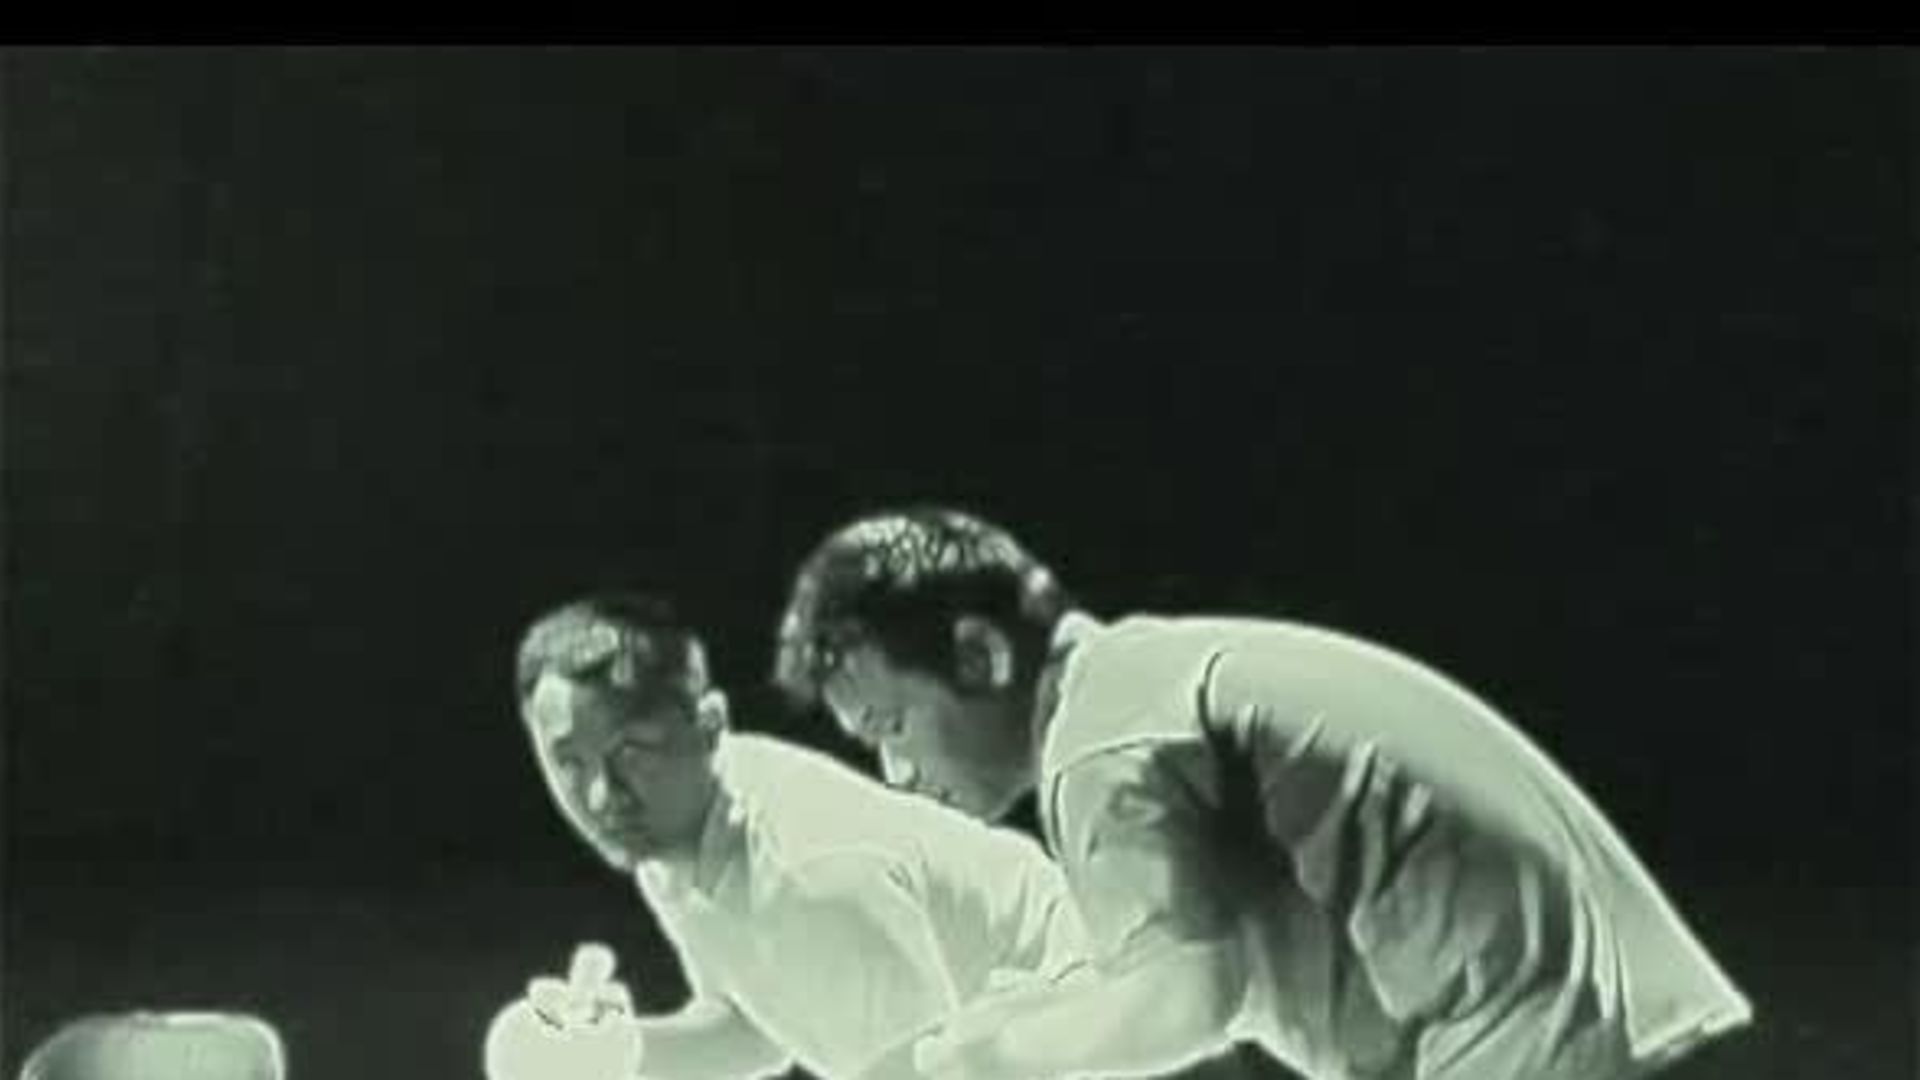 Watch Guarda Bruce Lee che gioca a ping pong con il nunchaku | Wired Italia